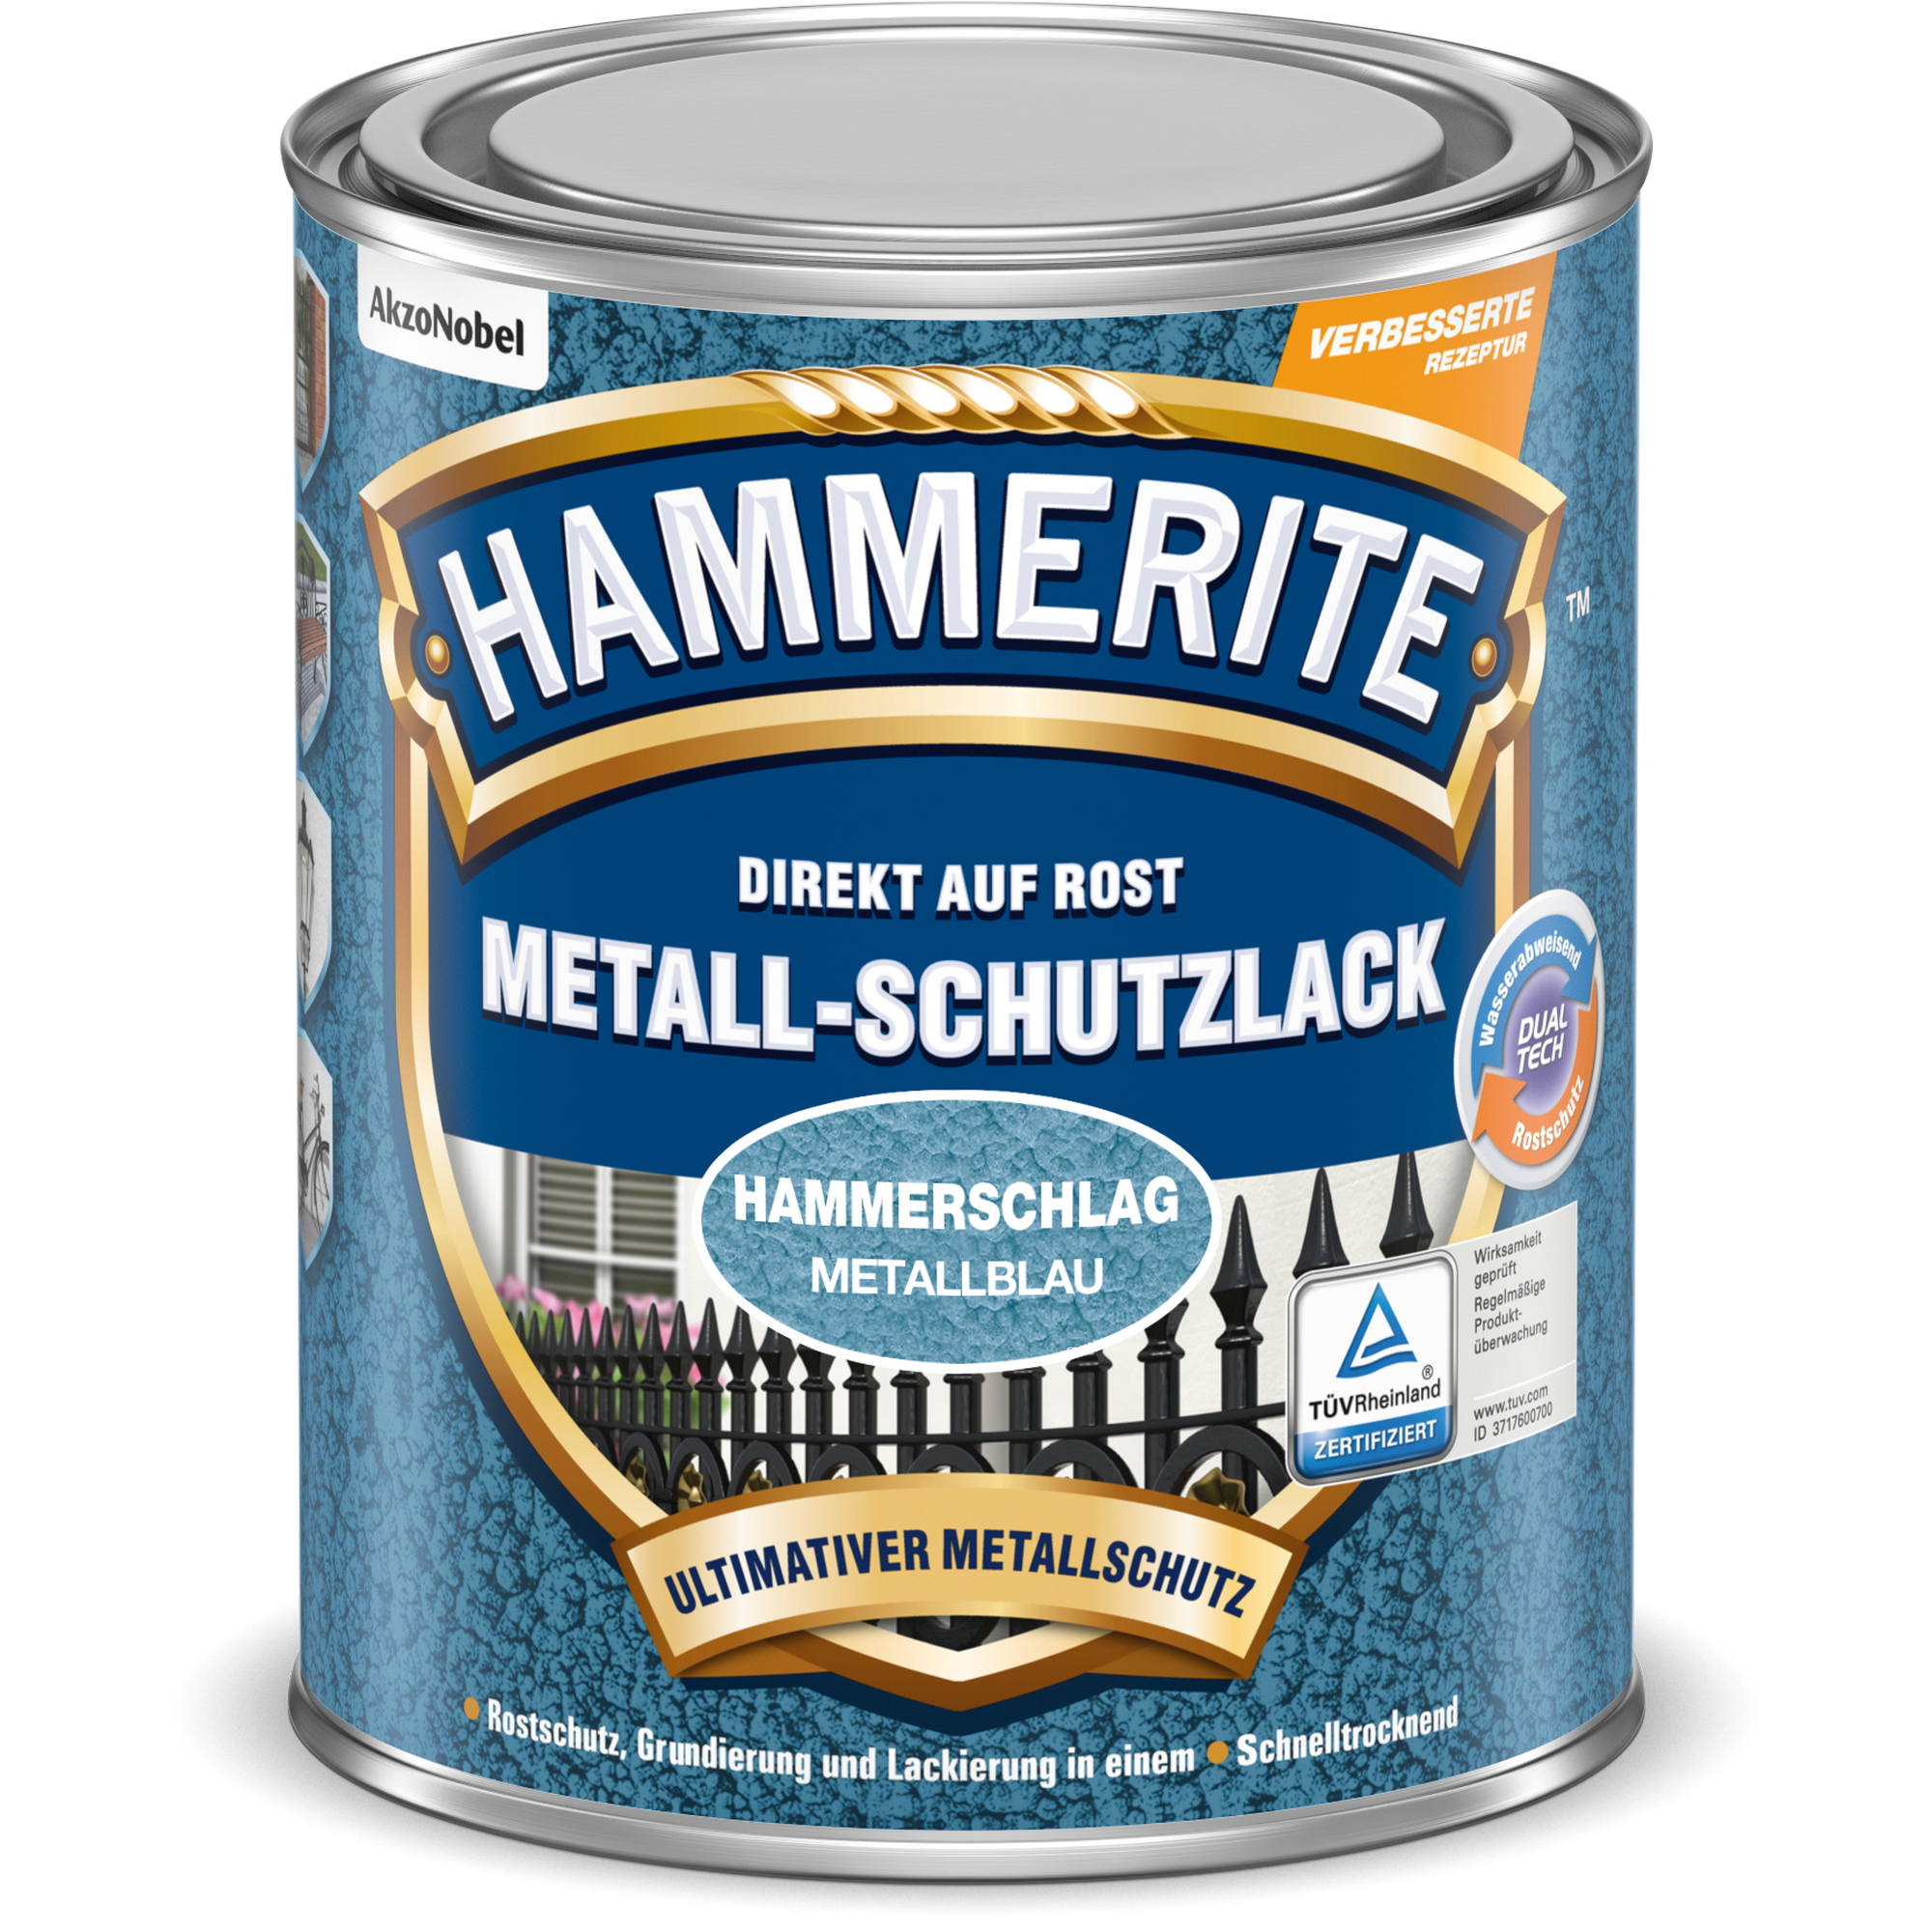 Metallschutzlack Hammerschlag-Effekt metallblau 750 ml + product picture